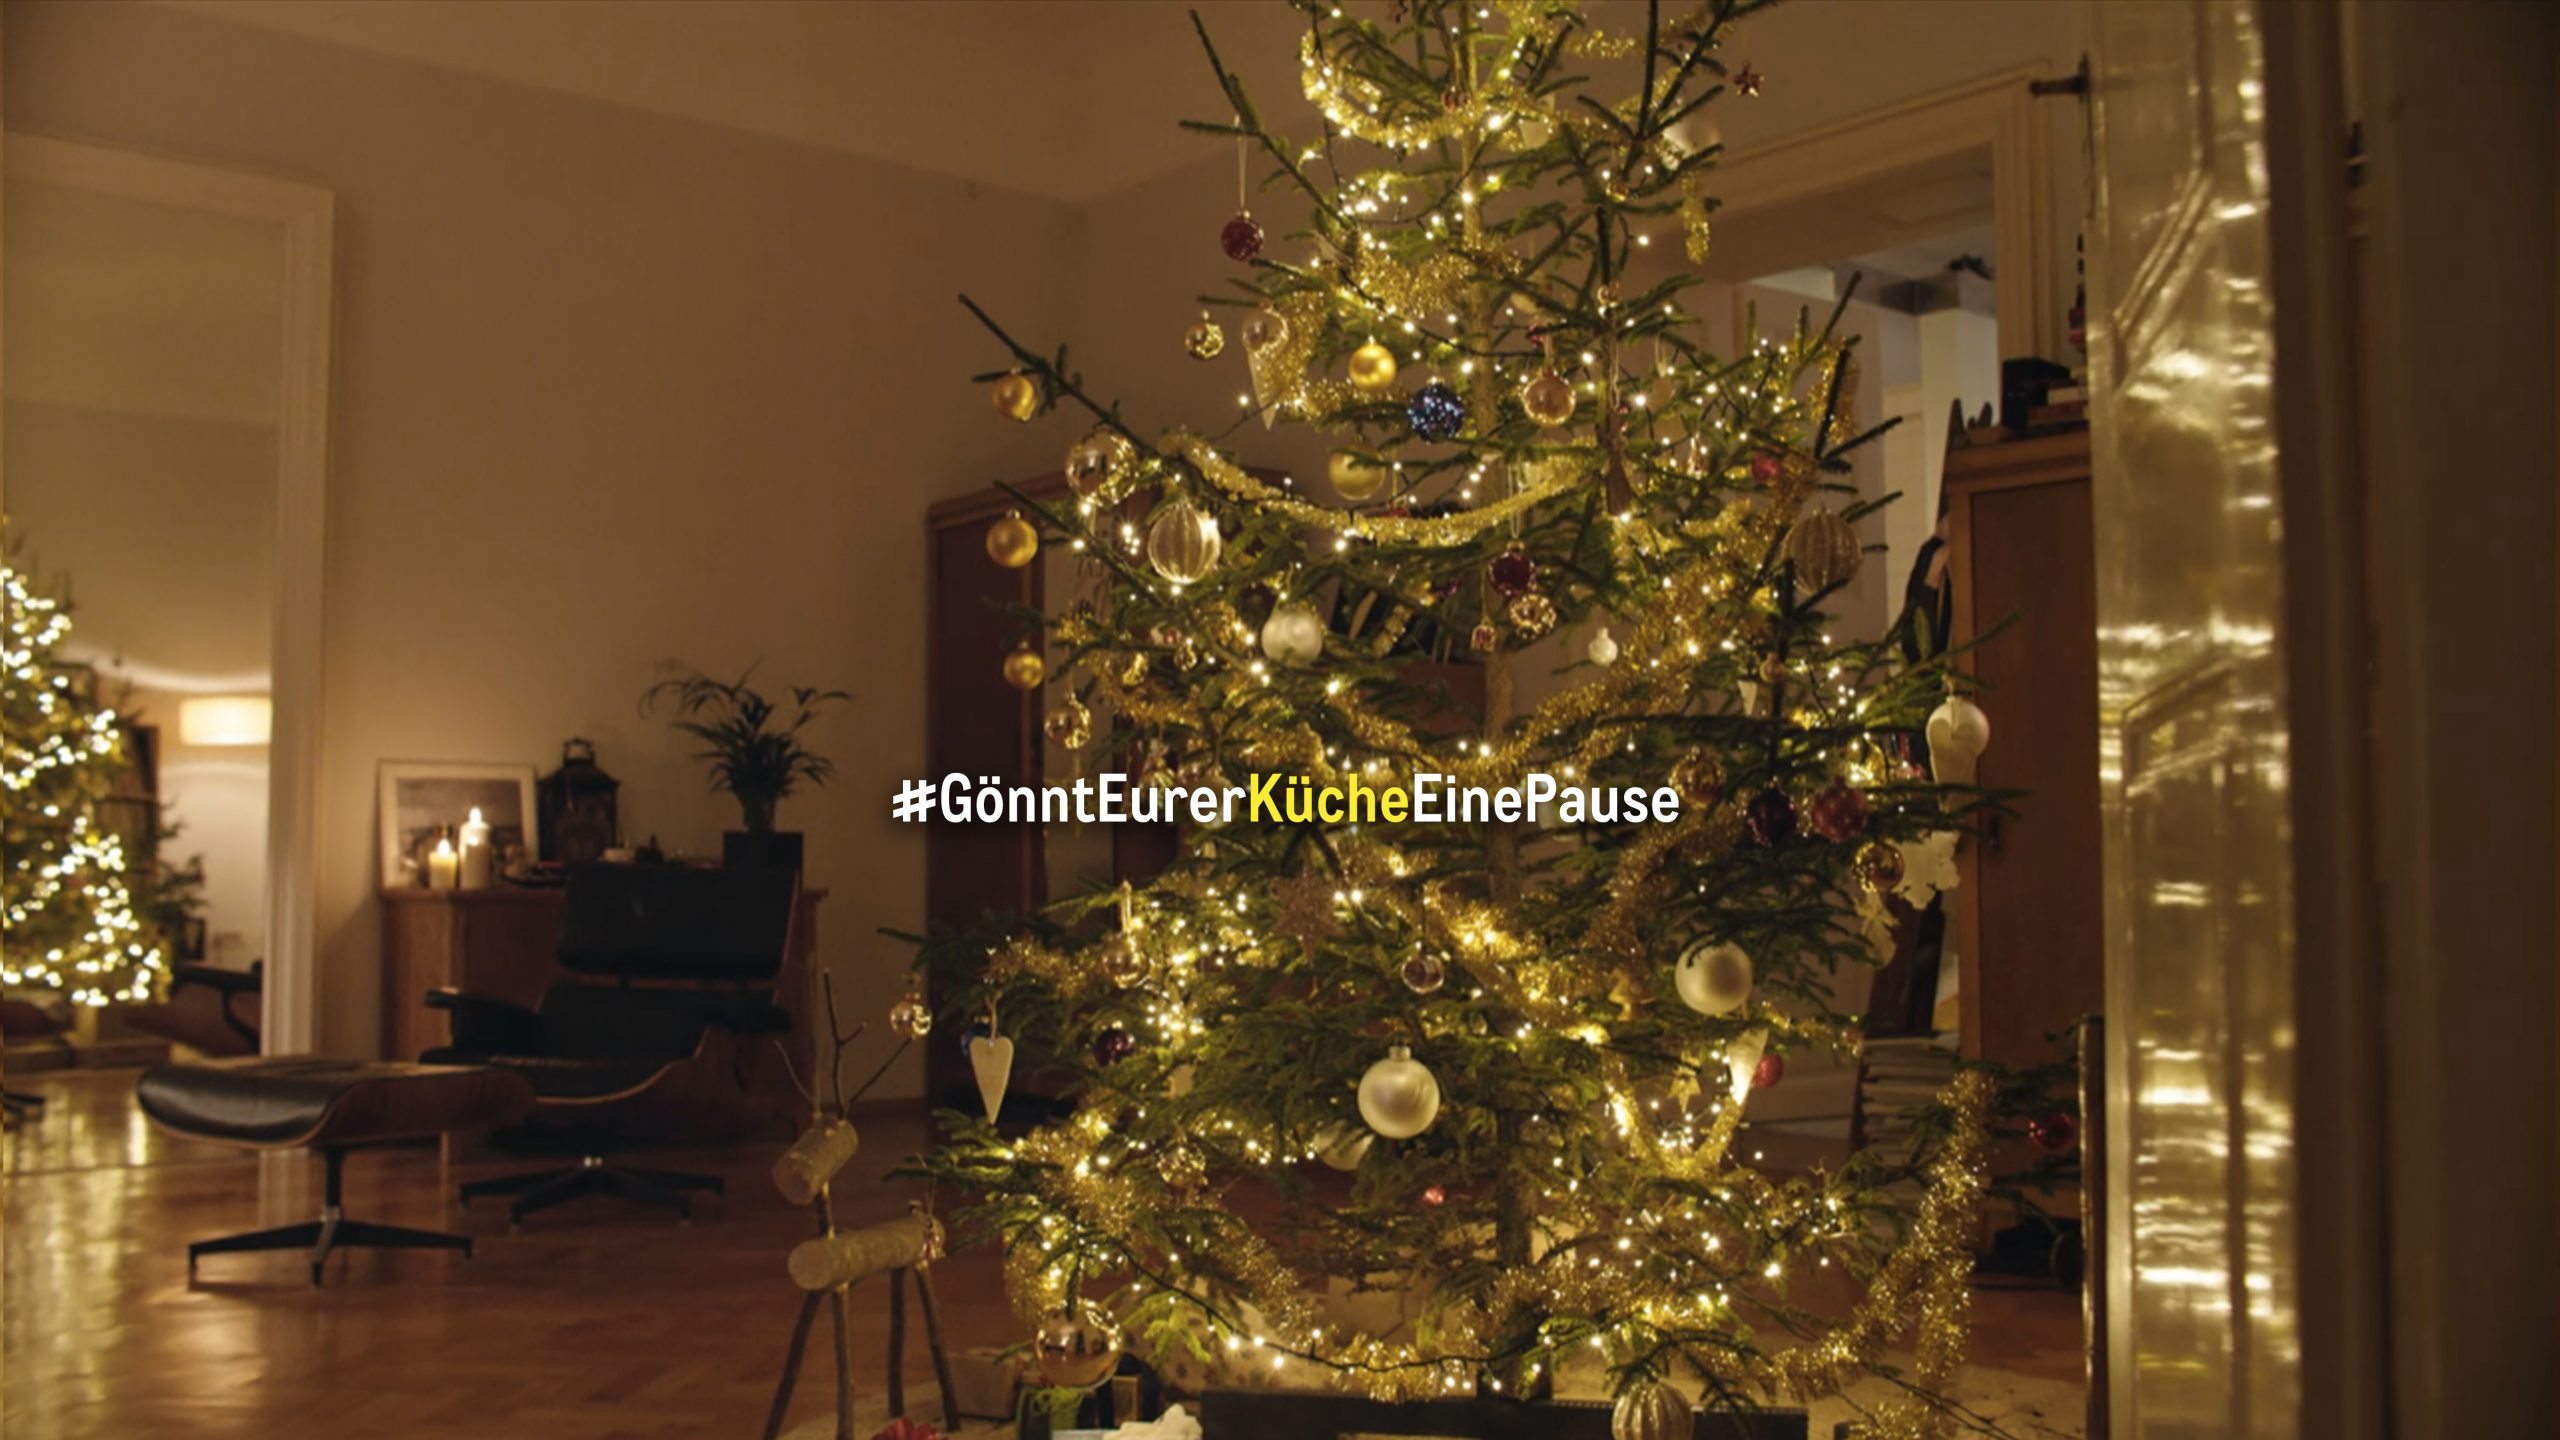 Kampagne #GönntEurerKücheEinePause plädiert für Gastronomie-Unterstützung: METRO Deutschland bittet alle darum, das Weihnachtsessen diesmal nicht selbst zu kochen, sondern zu bestellen